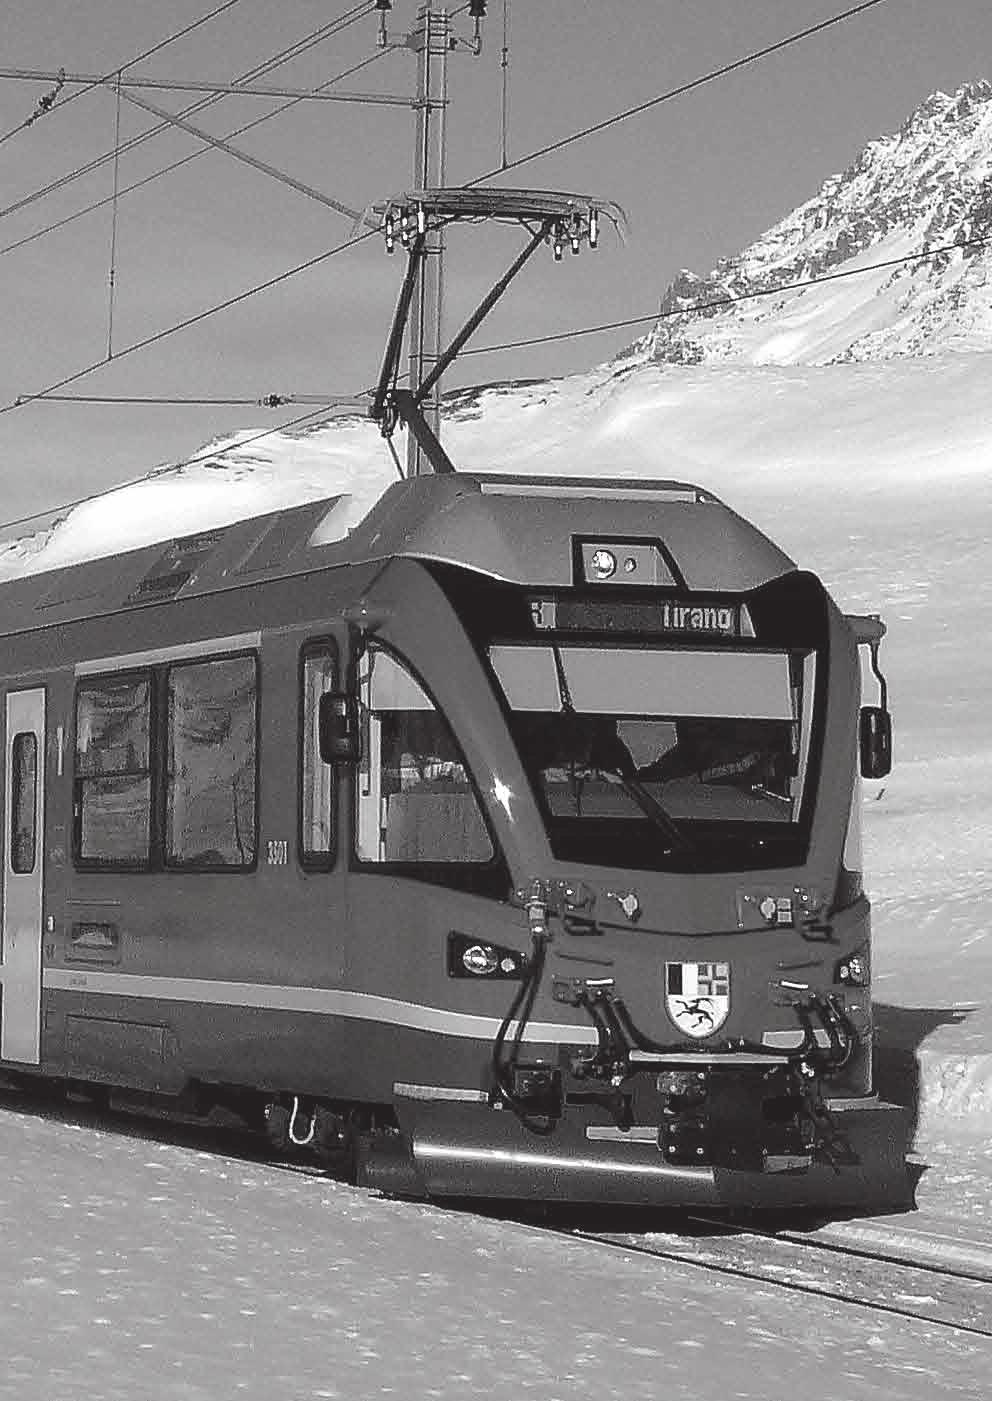 Dampfschneeschleuder Anläßlich des Jubiläums 100 Jahre Berninabahn legen wir das Modell der selbstfahrenden Bernina-